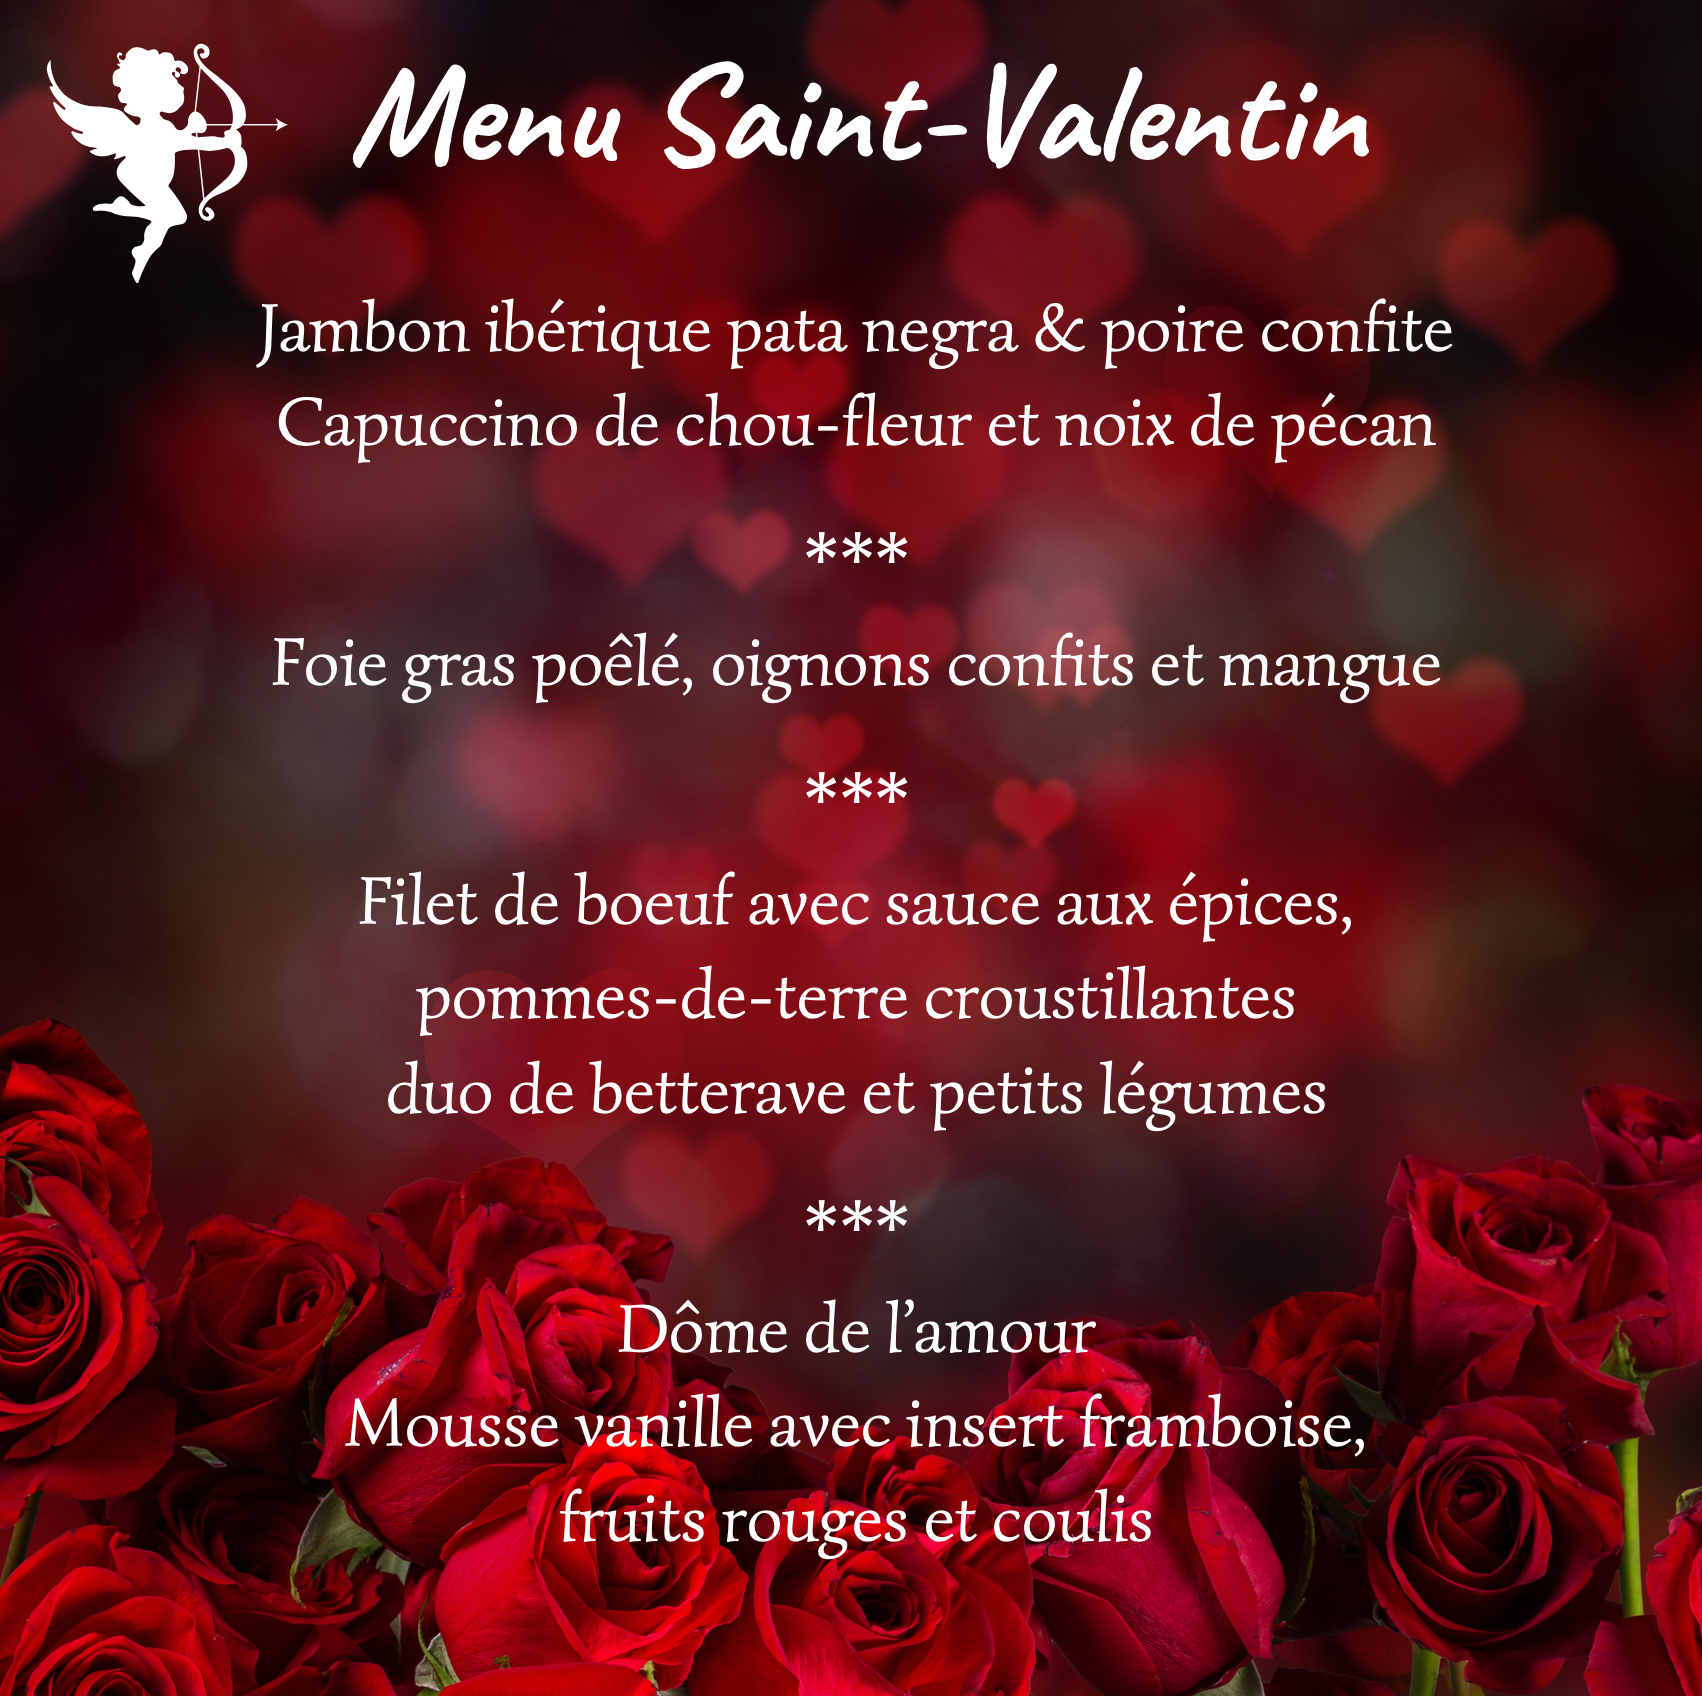 St-Valentin_menu